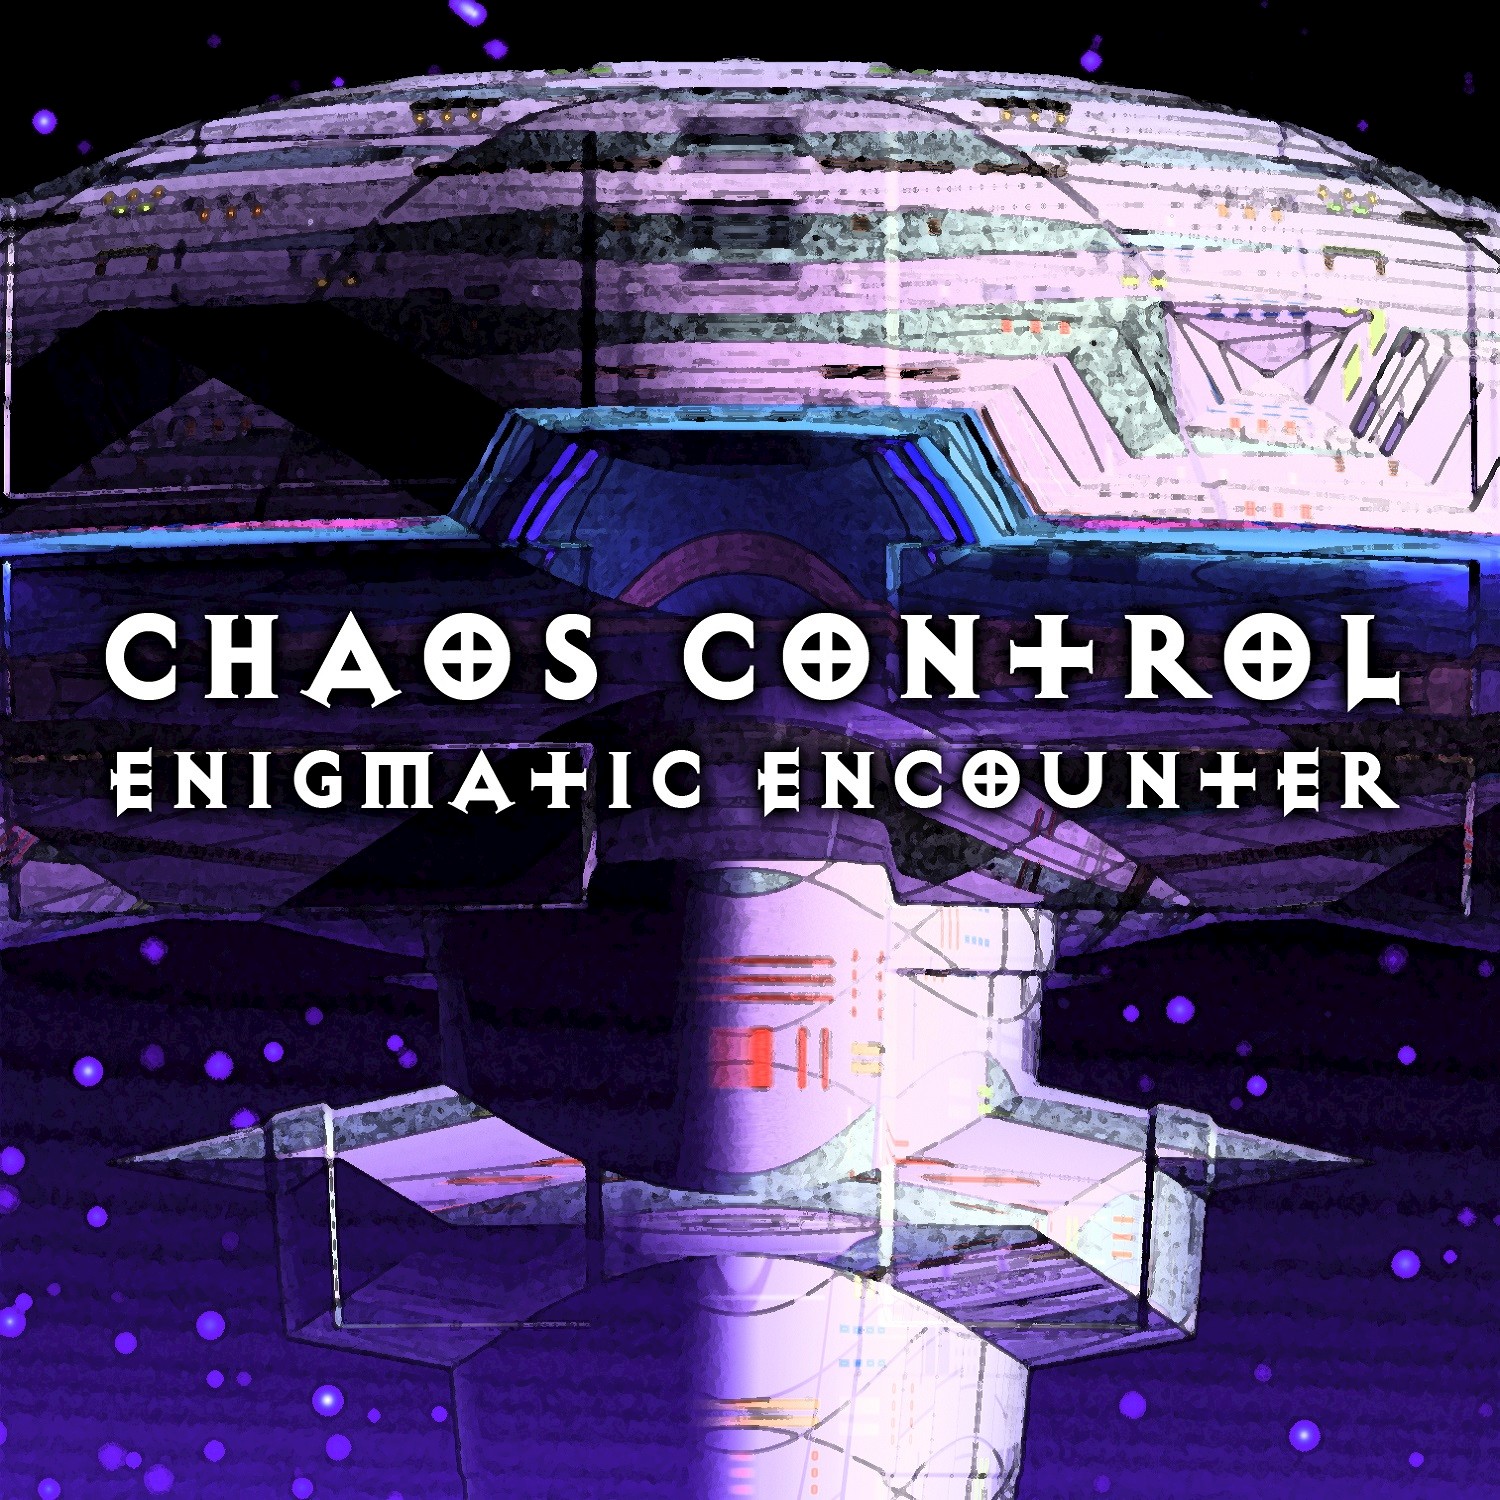 An enigmatic encounter. Enigma encounter альбом. Enigmatic encounter ATB and Enigma альбом. Энигматик картинки. Enigmatic Legacy Фандои.